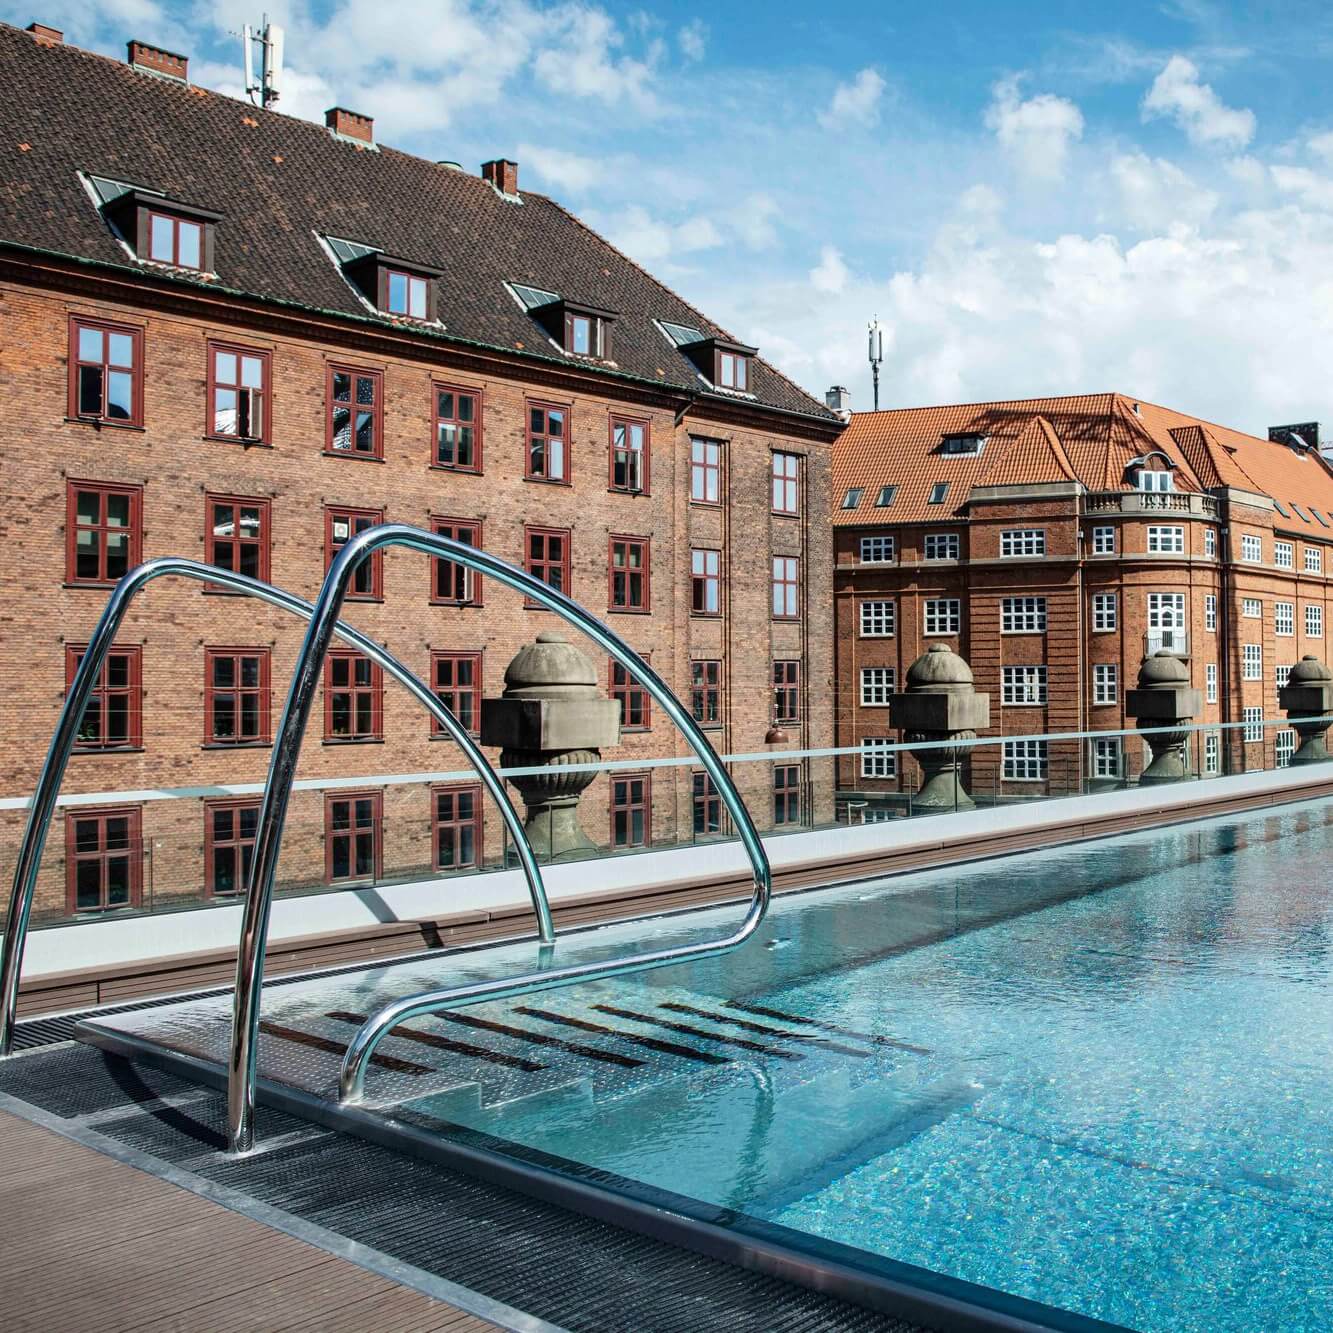 Rooftop pool at hotel Villa Copenhagen.